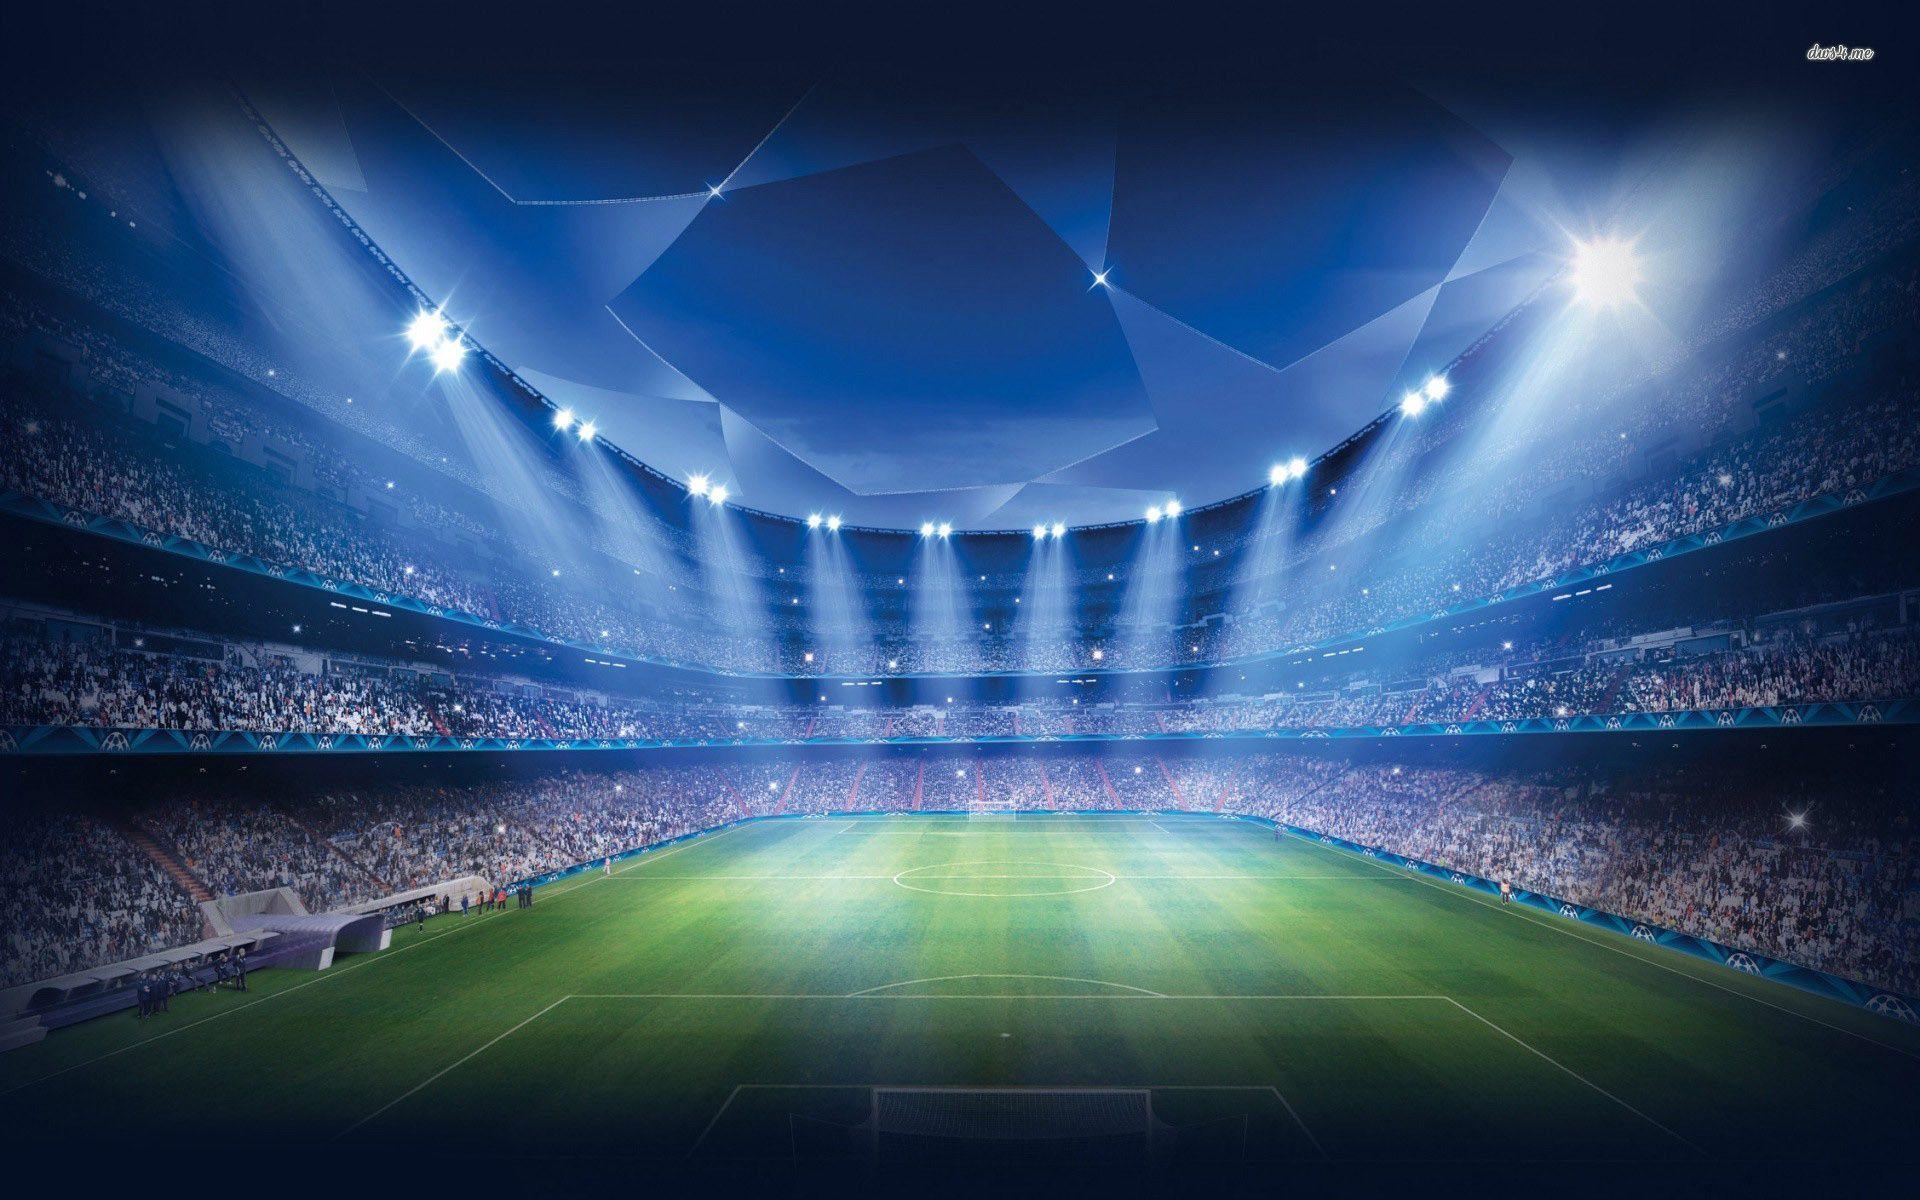 Soccer Stadium Wallpaper For Windows #kxT. Stadium wallpaper, Football wallpaper, Sports wallpaper